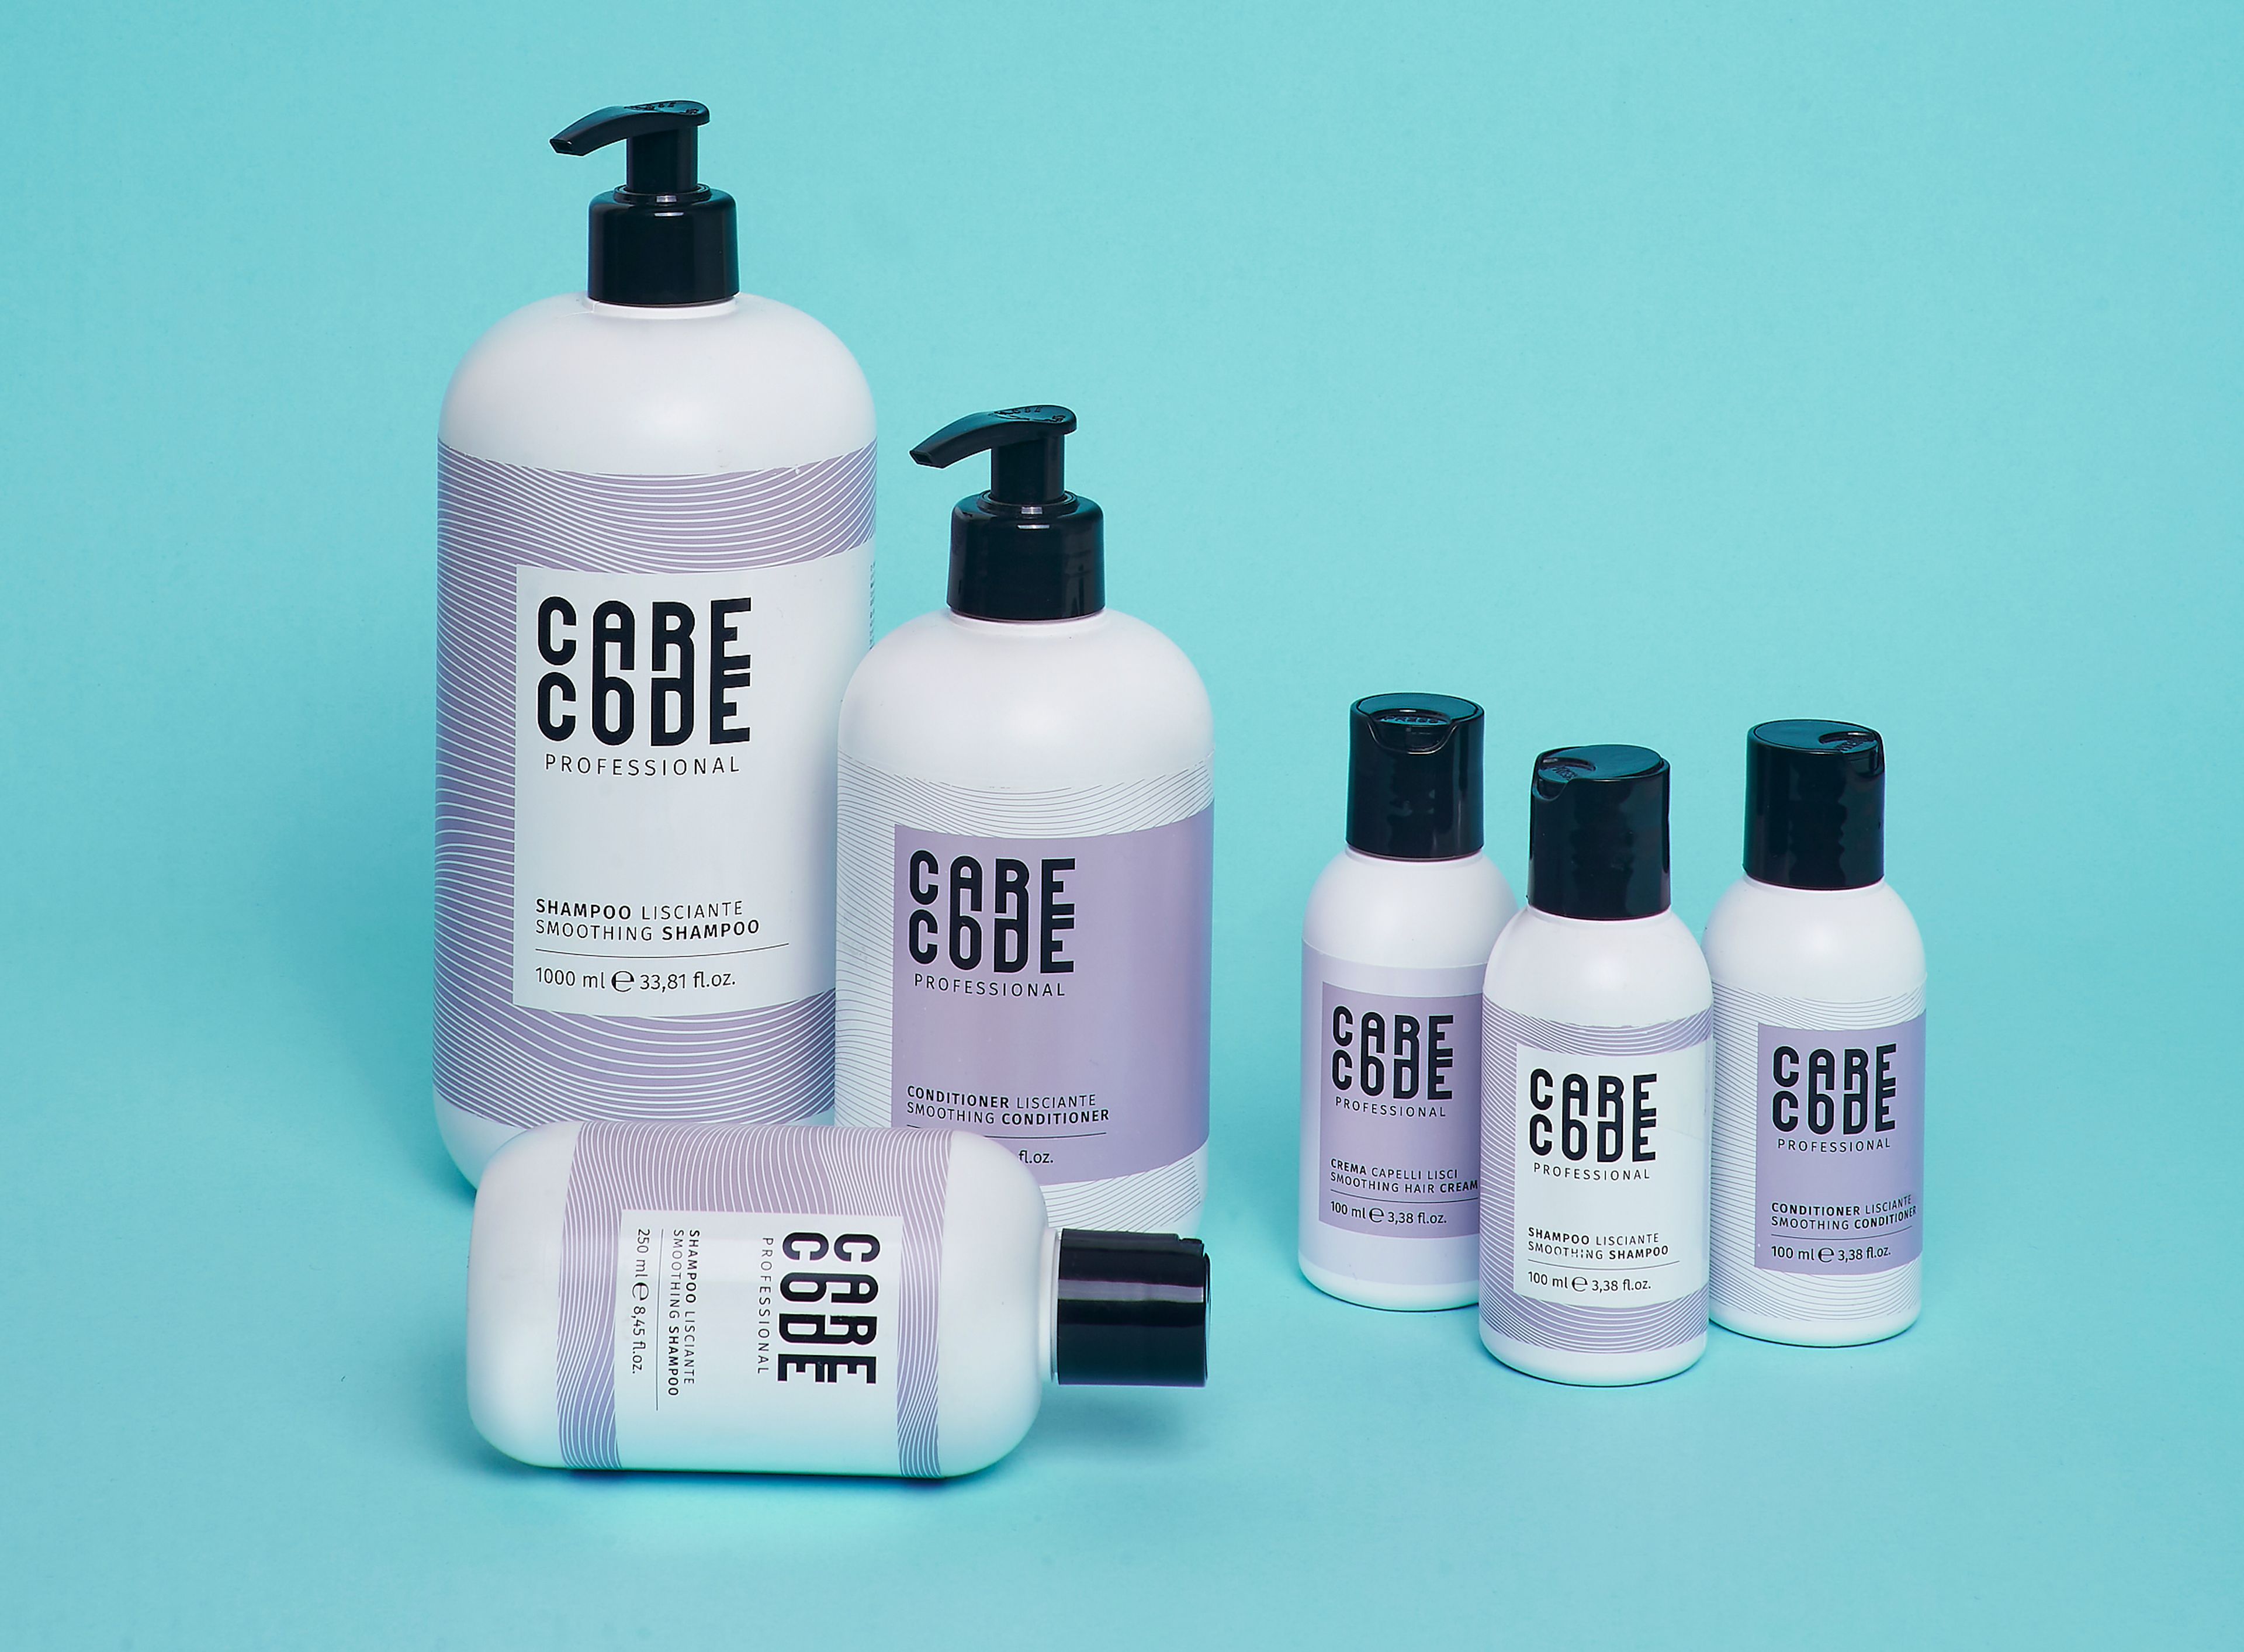 Care Code Shampoo Lisciante 3